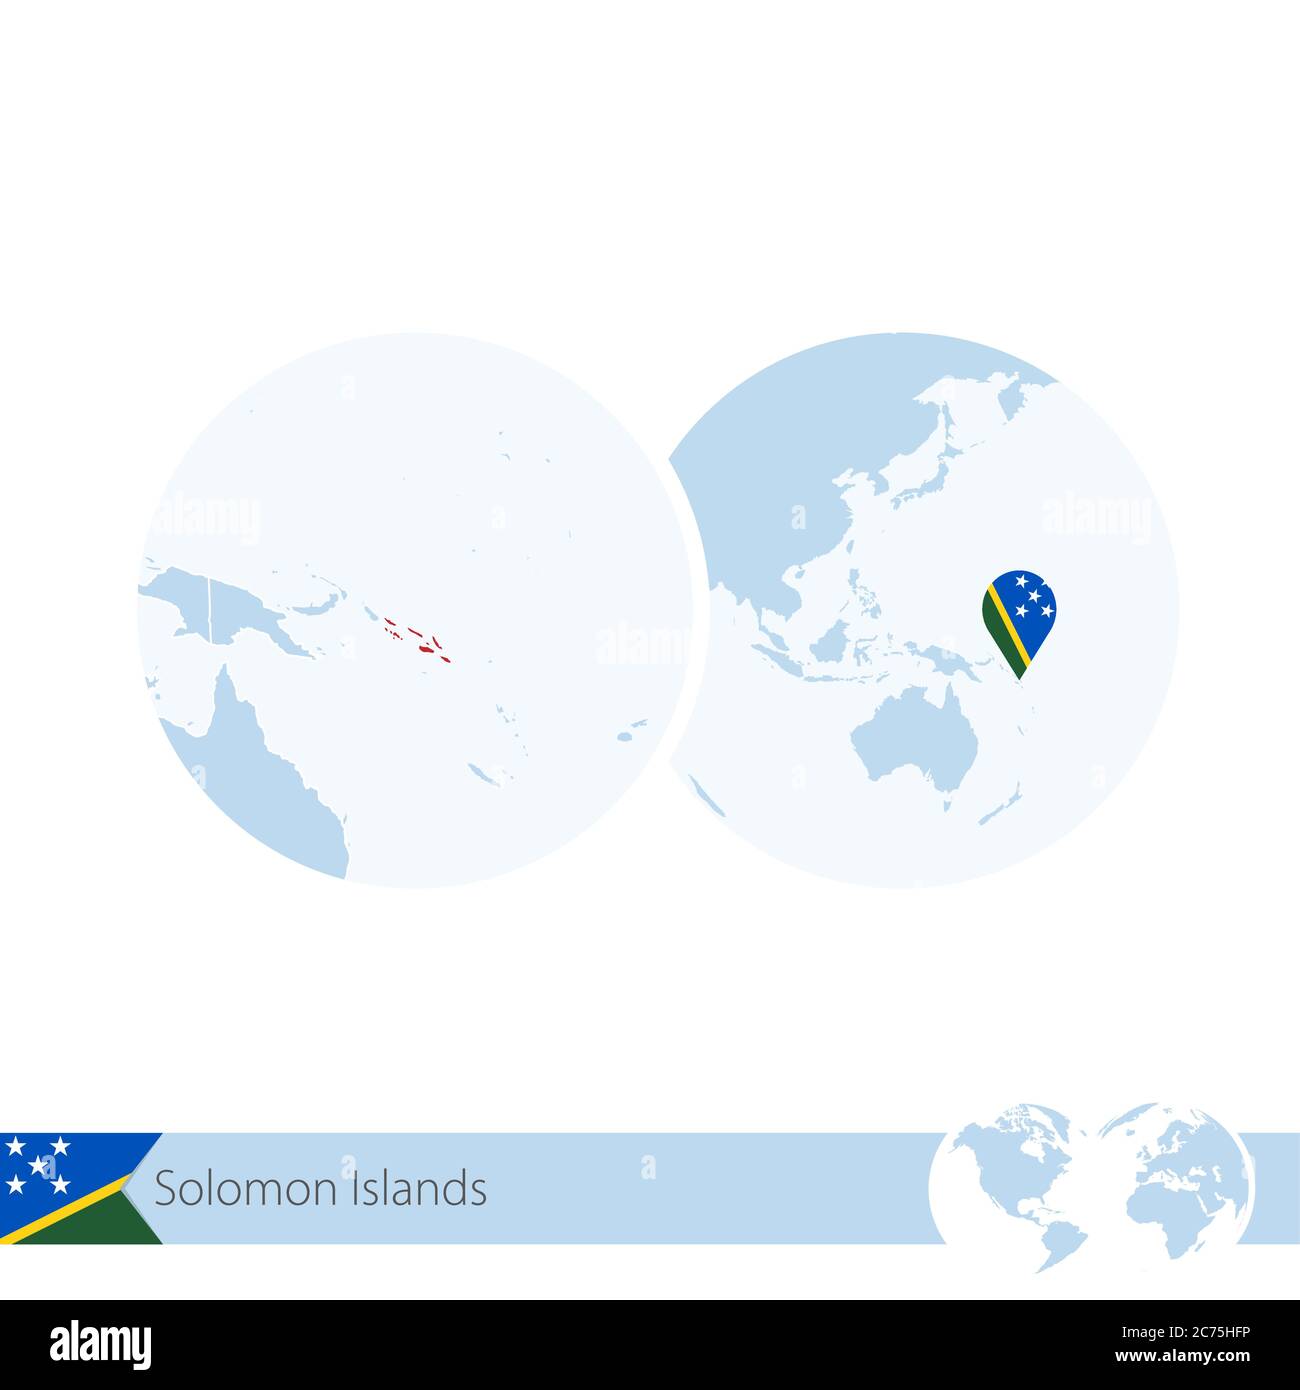 Îles Salomon sur le globe avec drapeau et carte régionale des îles Salomon.  Illustration vectorielle Image Vectorielle Stock - Alamy